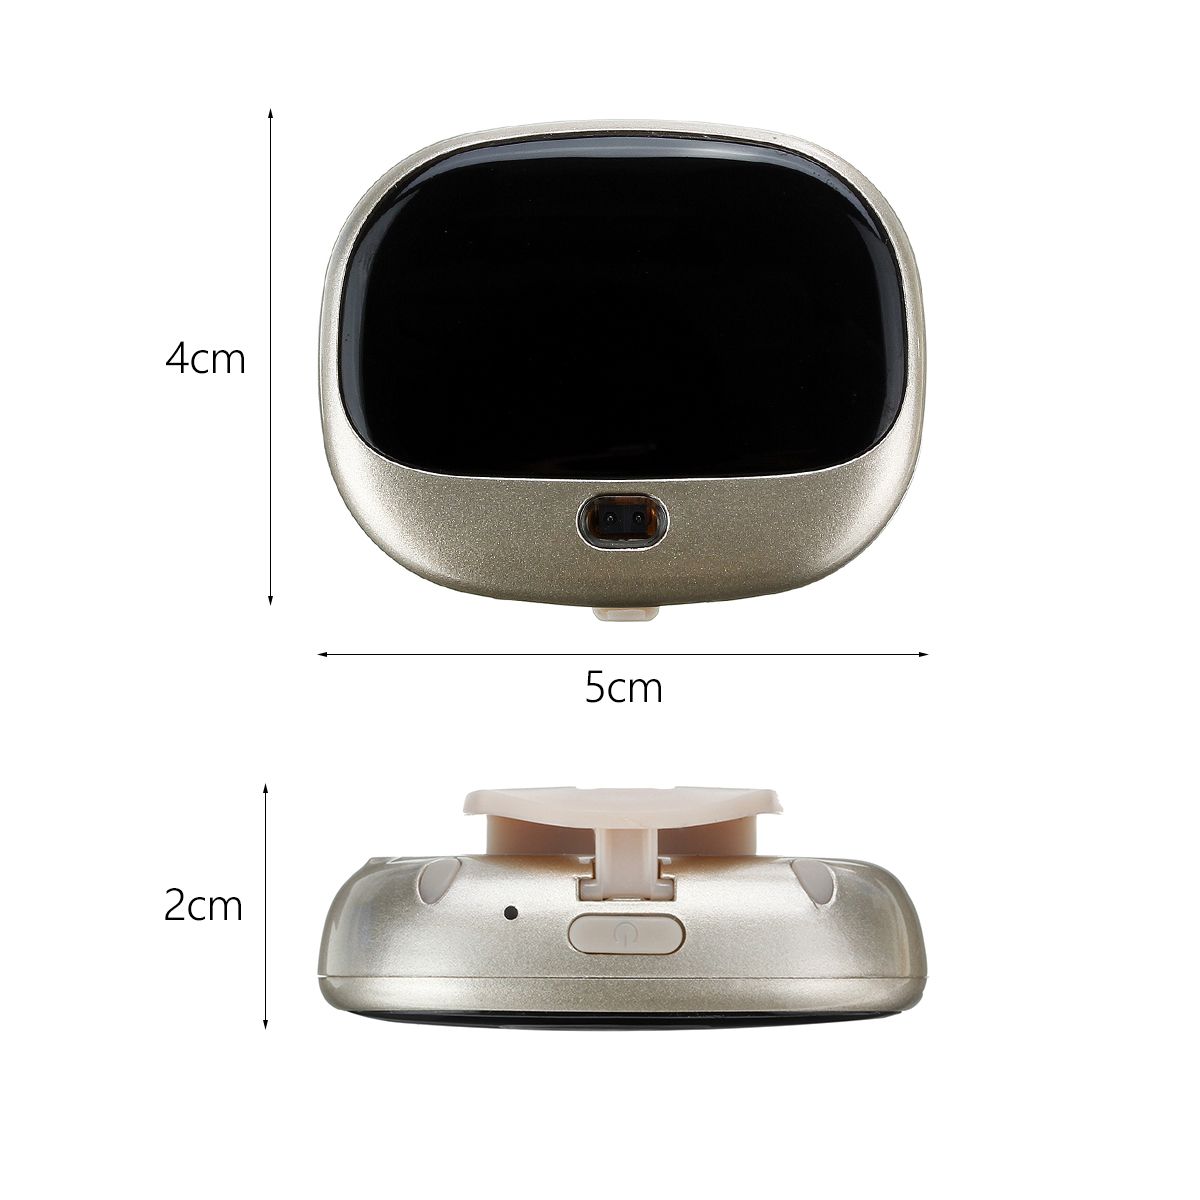 4G-Smart-Wasserdichte-Bluetooth-GPS-Tracker-fuumlr-Haustier-Hund-Katze-Schluumlssel-1659493